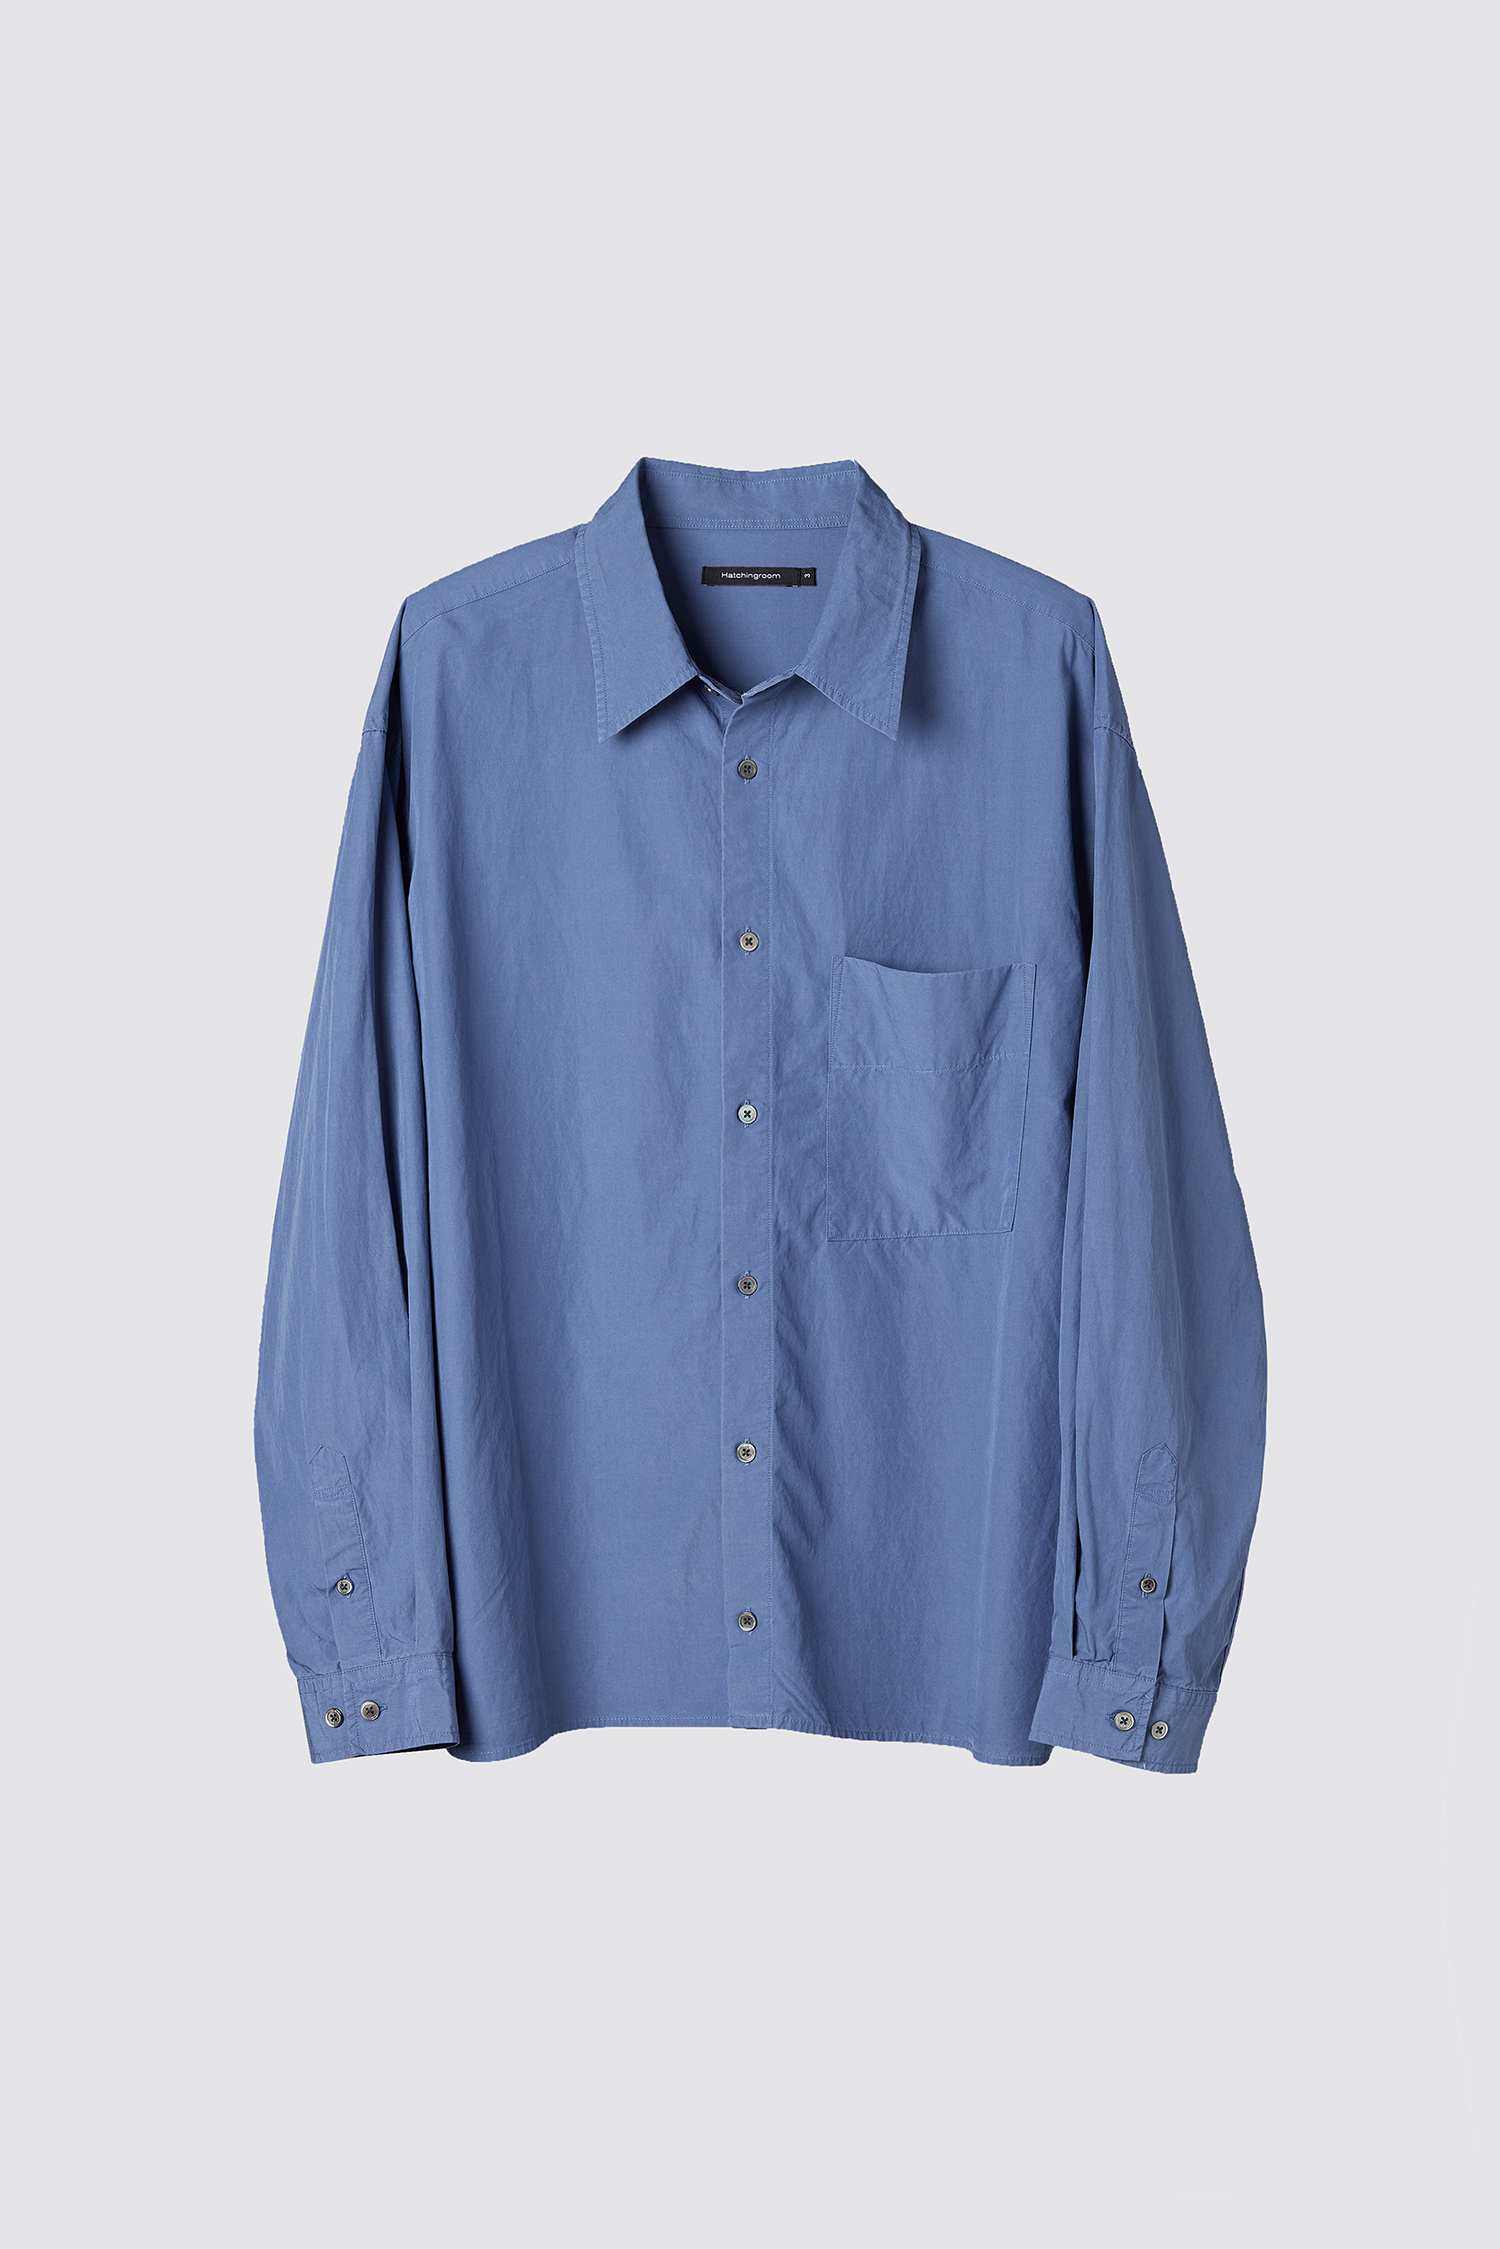 Crop Shirt Slate Blue (Restock)